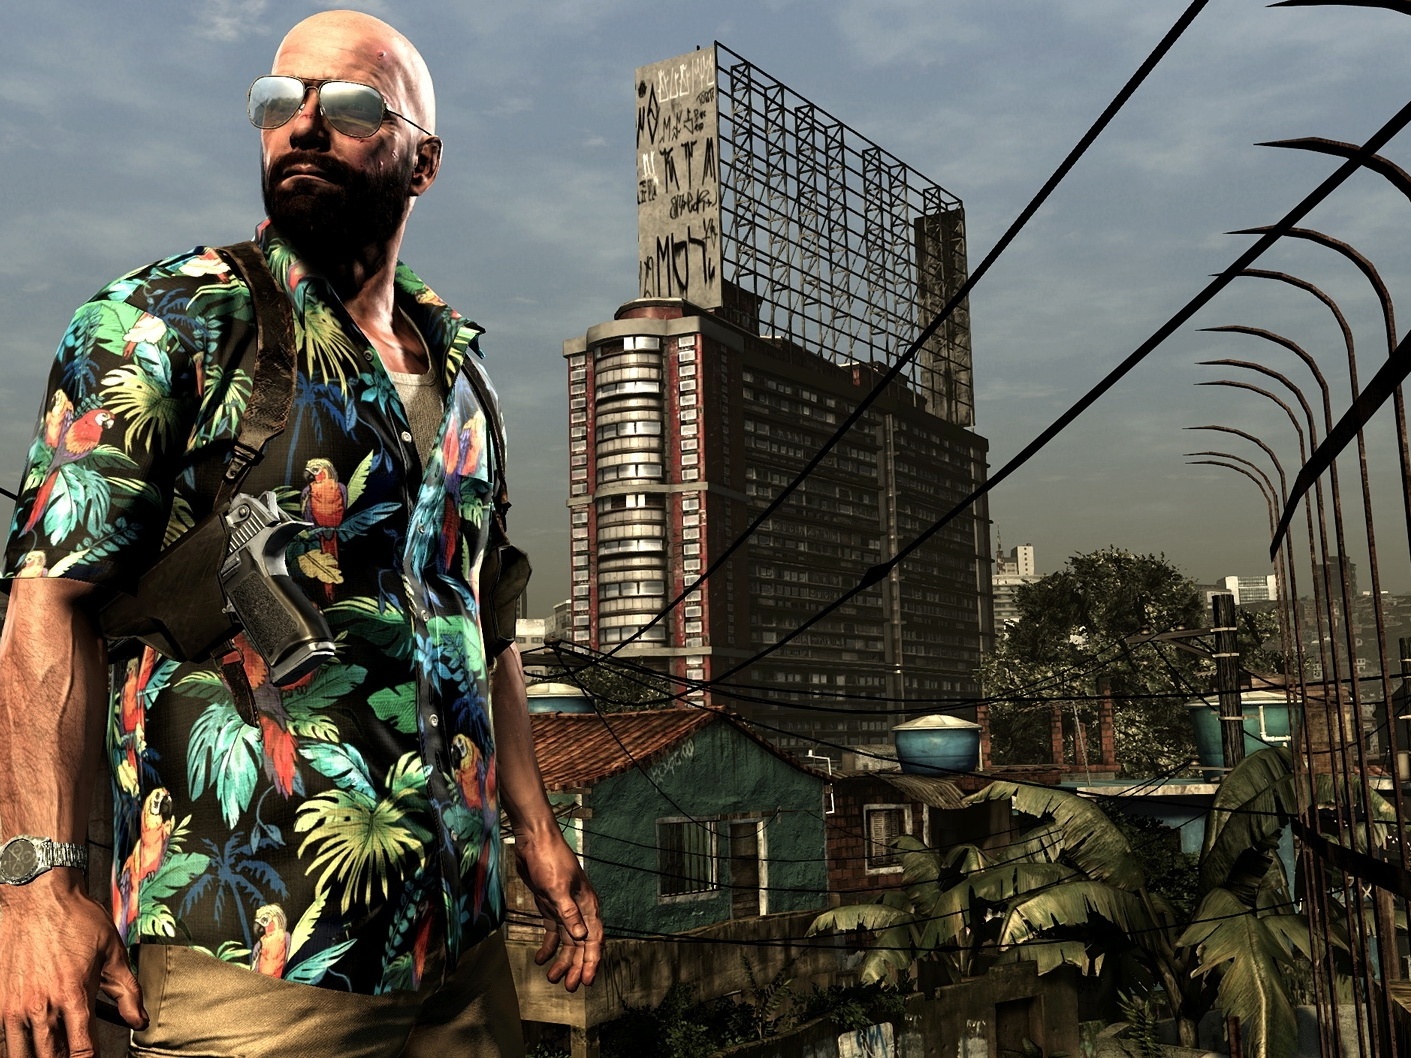 Jogo Max Payne 3 - Xbox 360 - Mídia Física - Original